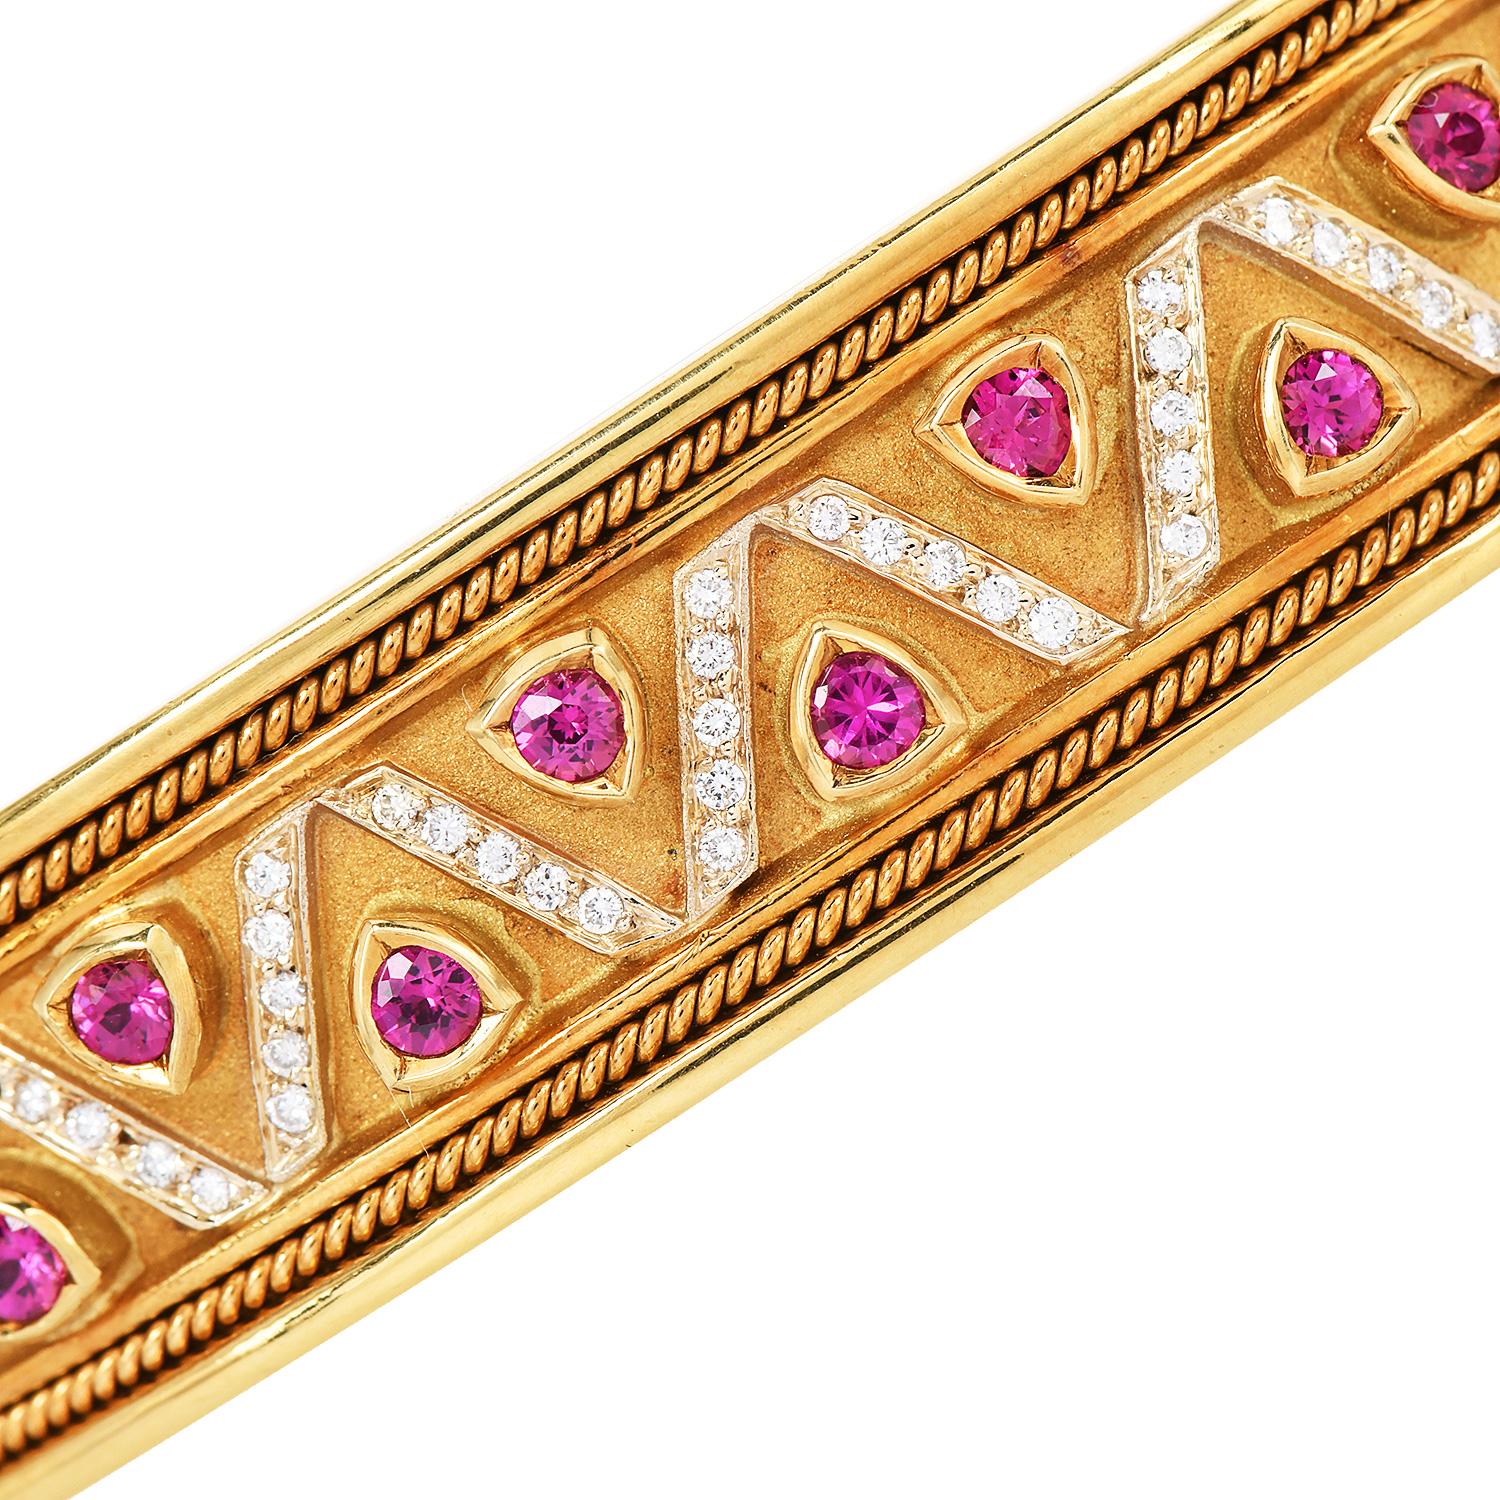 Diese 1980S breite Manschette Armband MAde in Solid 18K Gelbgold mit echten Rubinen und Diamanten.

Das Armband ist mit Edelsteinen, Rubinen und Diamanten in einem Dreieck-Design-Muster verziert. 

Das Manschettenarmband hat einen Scharniereinsatz